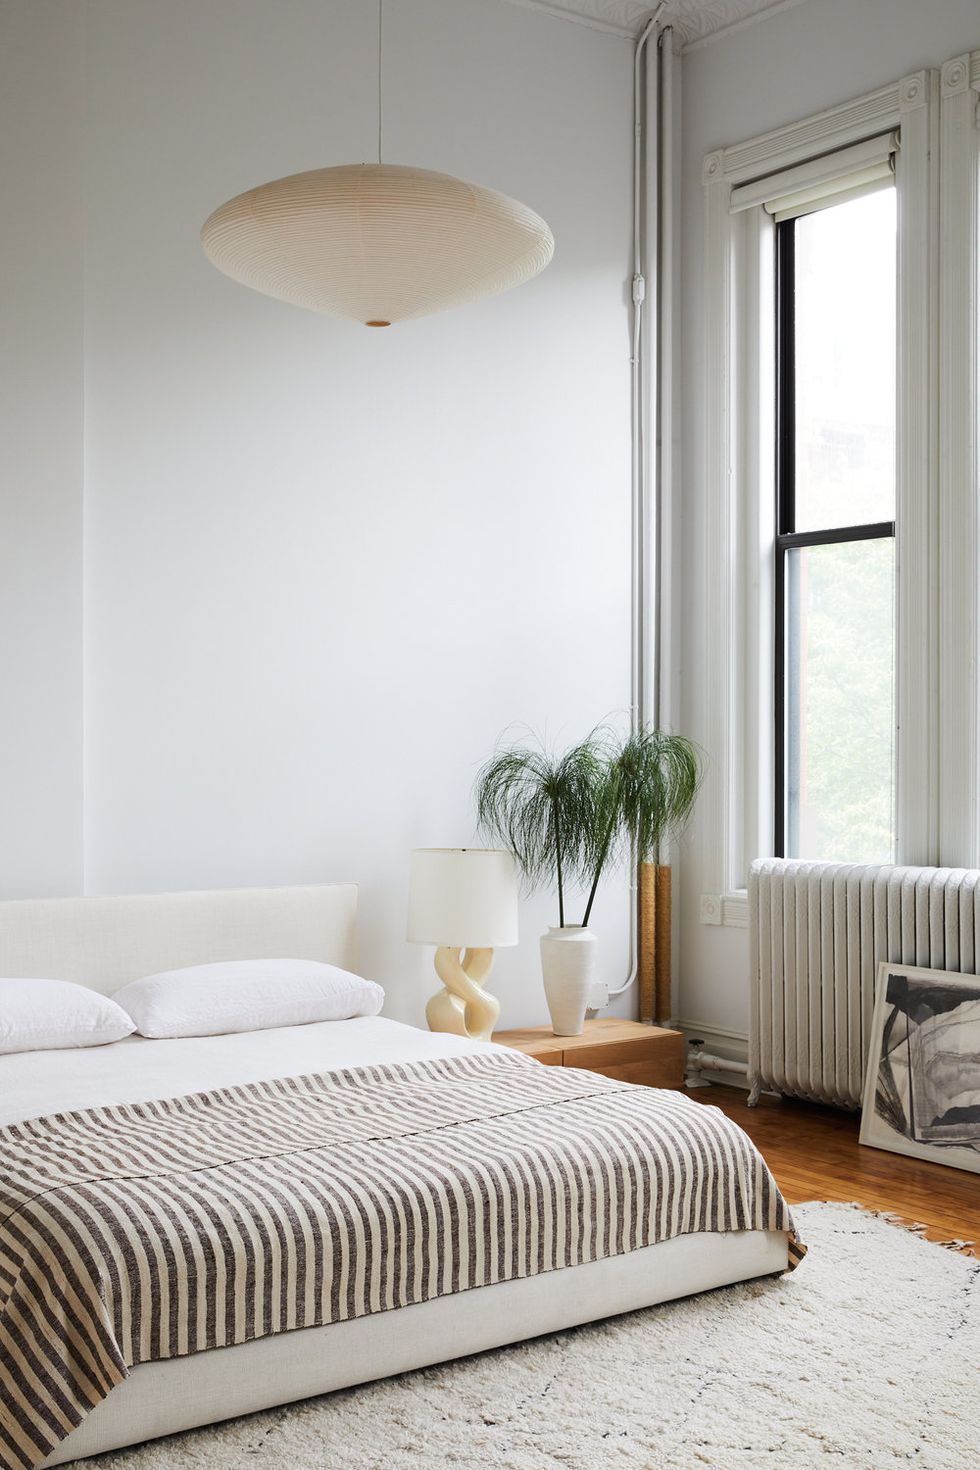 سبک و استایل مینیمال در طراحی داخلی اتاق خواب